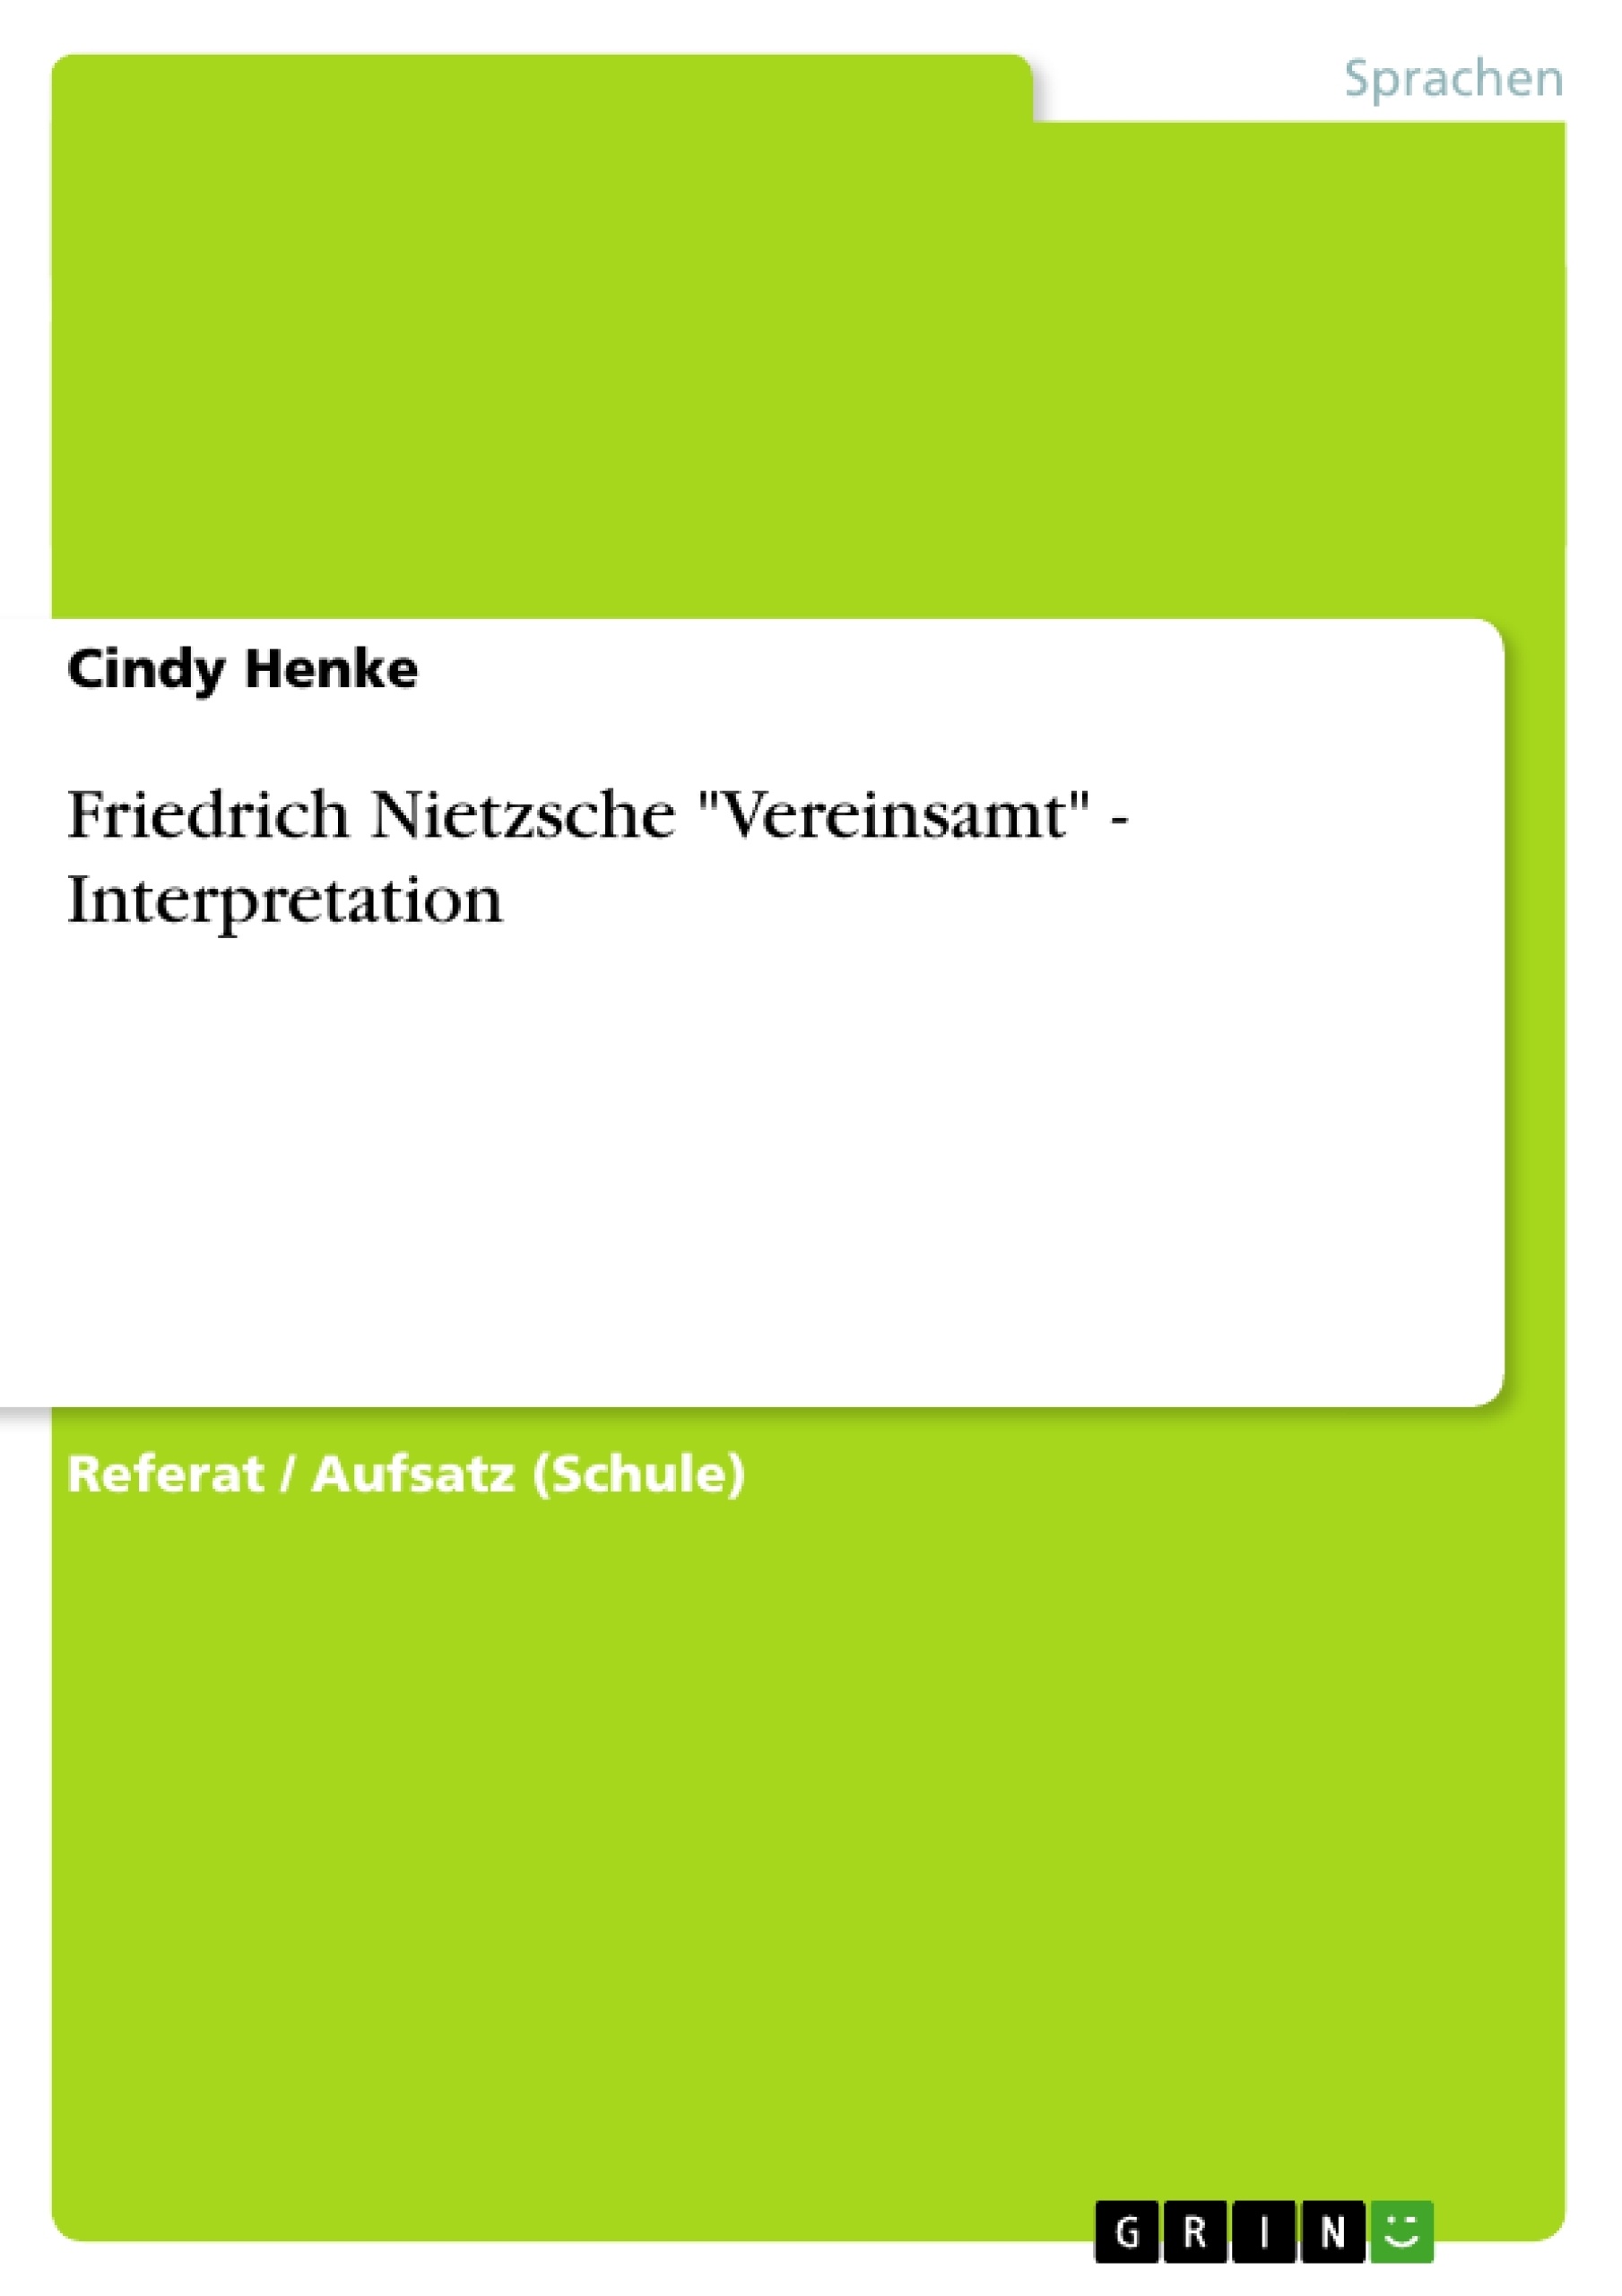 Title: Friedrich Nietzsche "Vereinsamt" - Interpretation